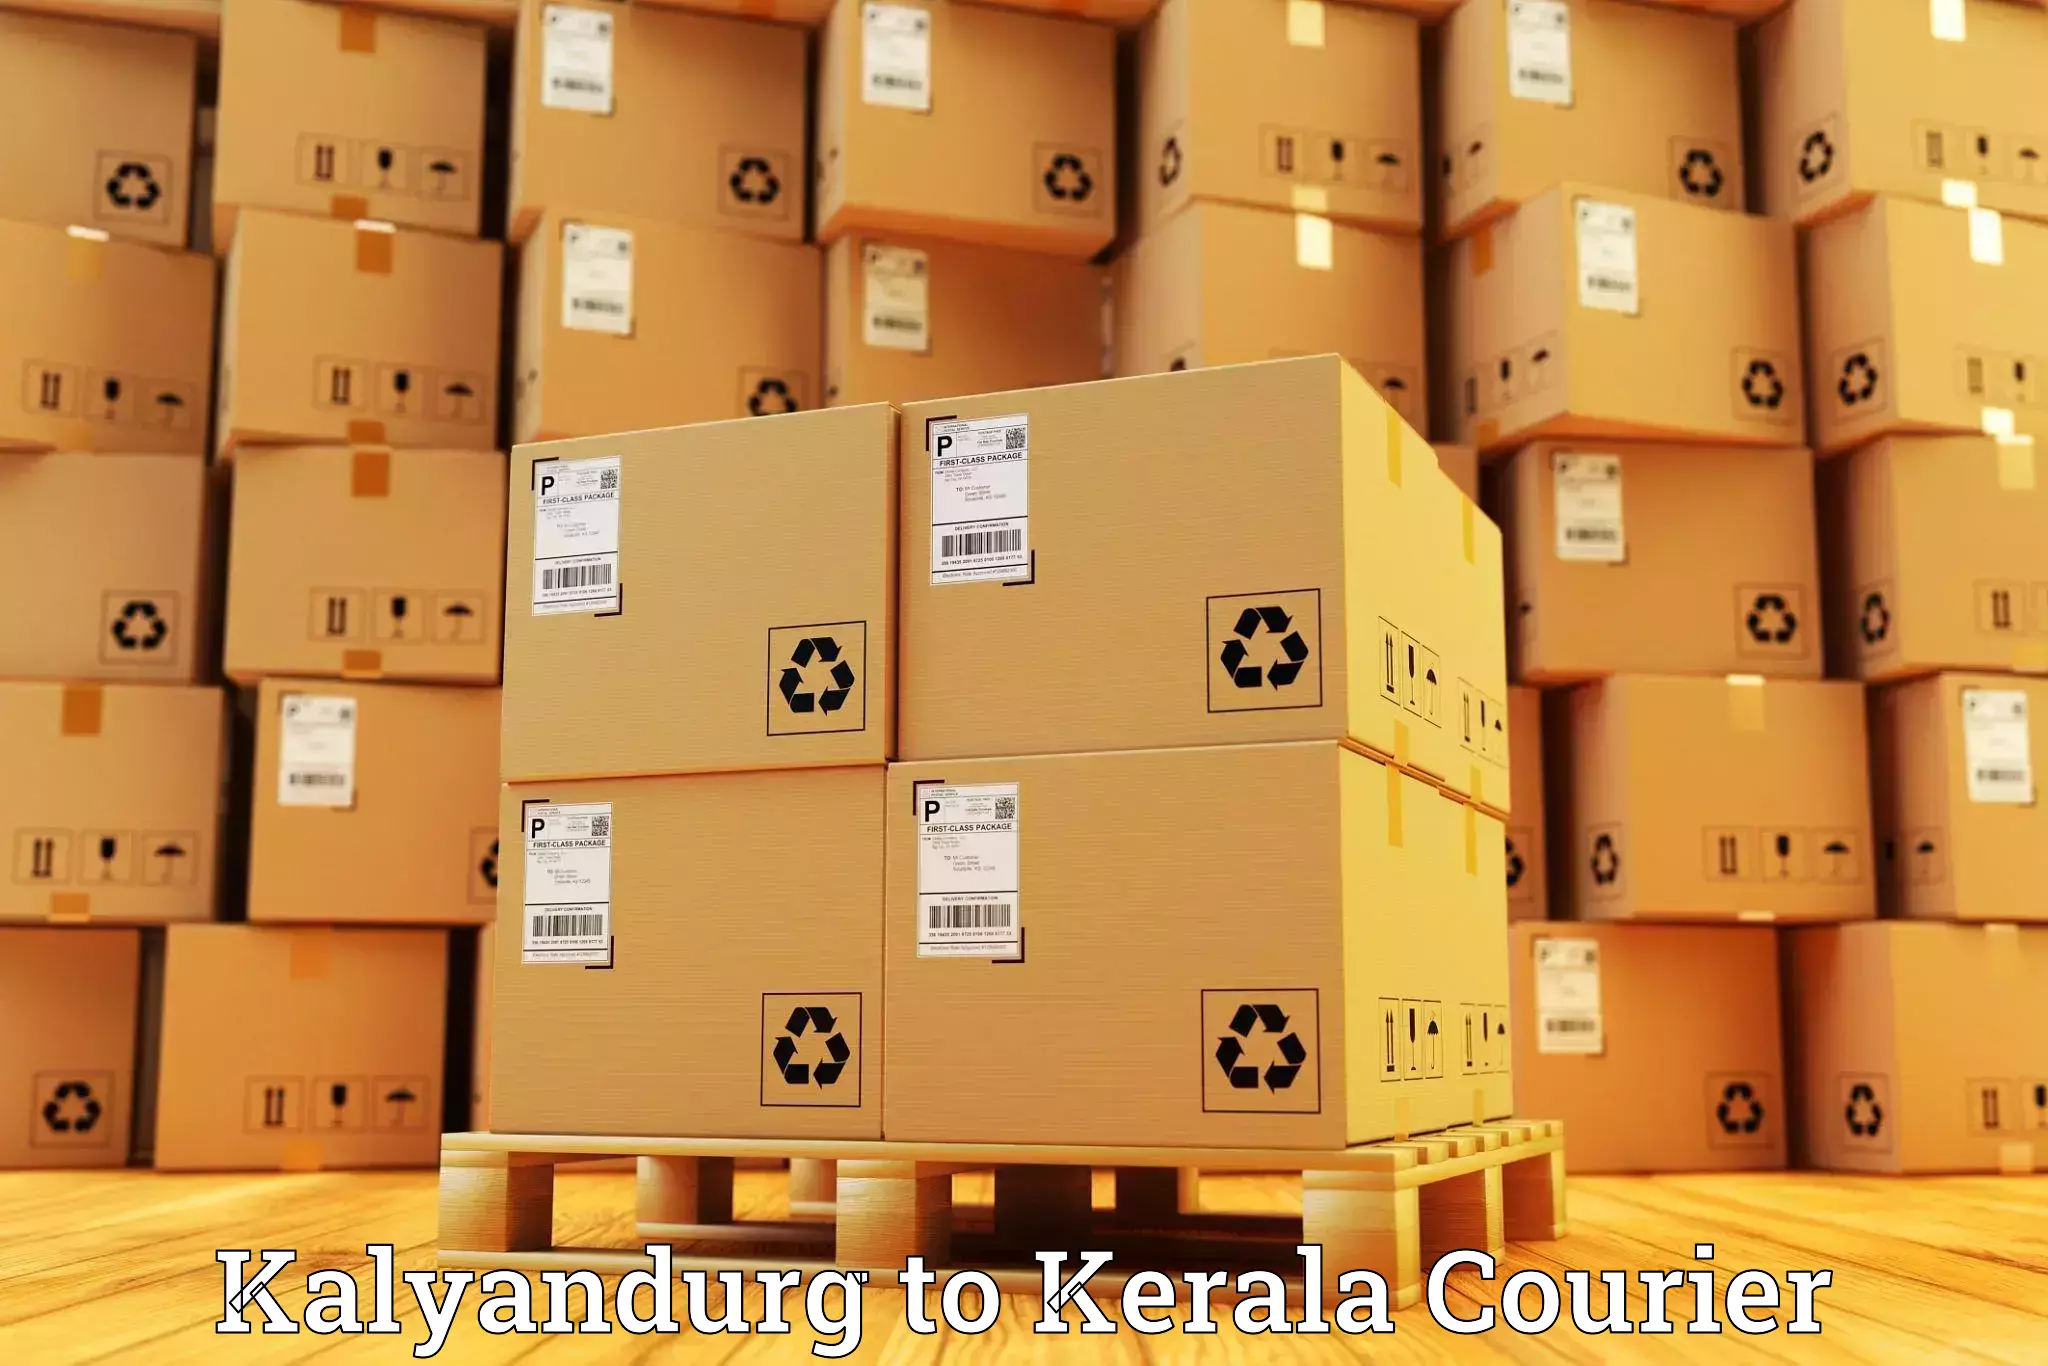 24/7 courier service in Kalyandurg to Kazhakkoottam